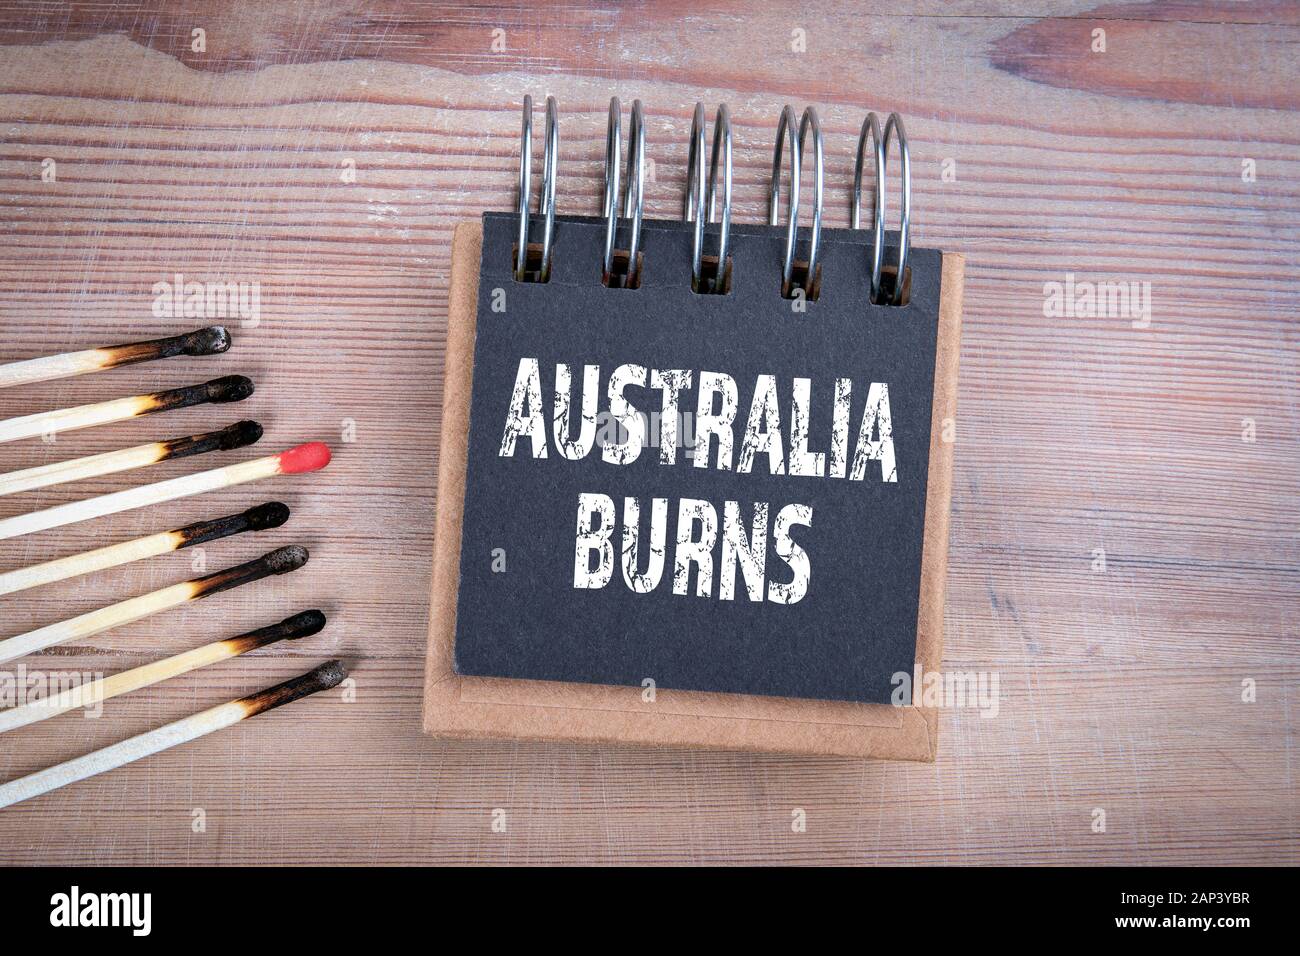 L'Australie burns. La sécurité incendie, de la nature, du logement et du comportement humain concept. Allumettes brûlées sur bois texture background Banque D'Images